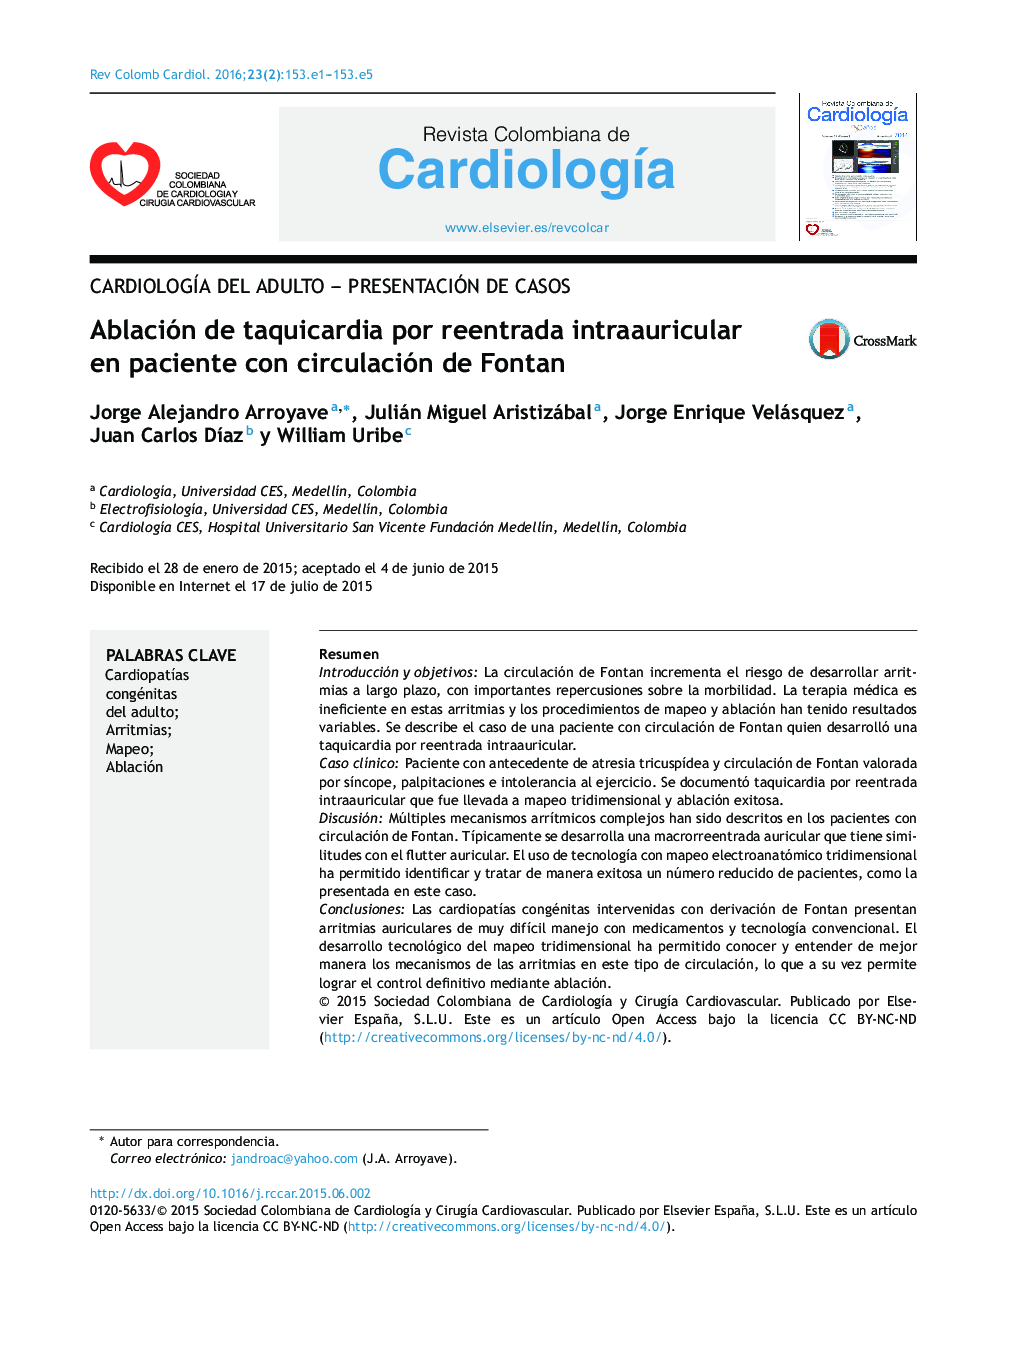 Ablación de taquicardia por reentrada intraauricular en paciente con circulación de Fontan